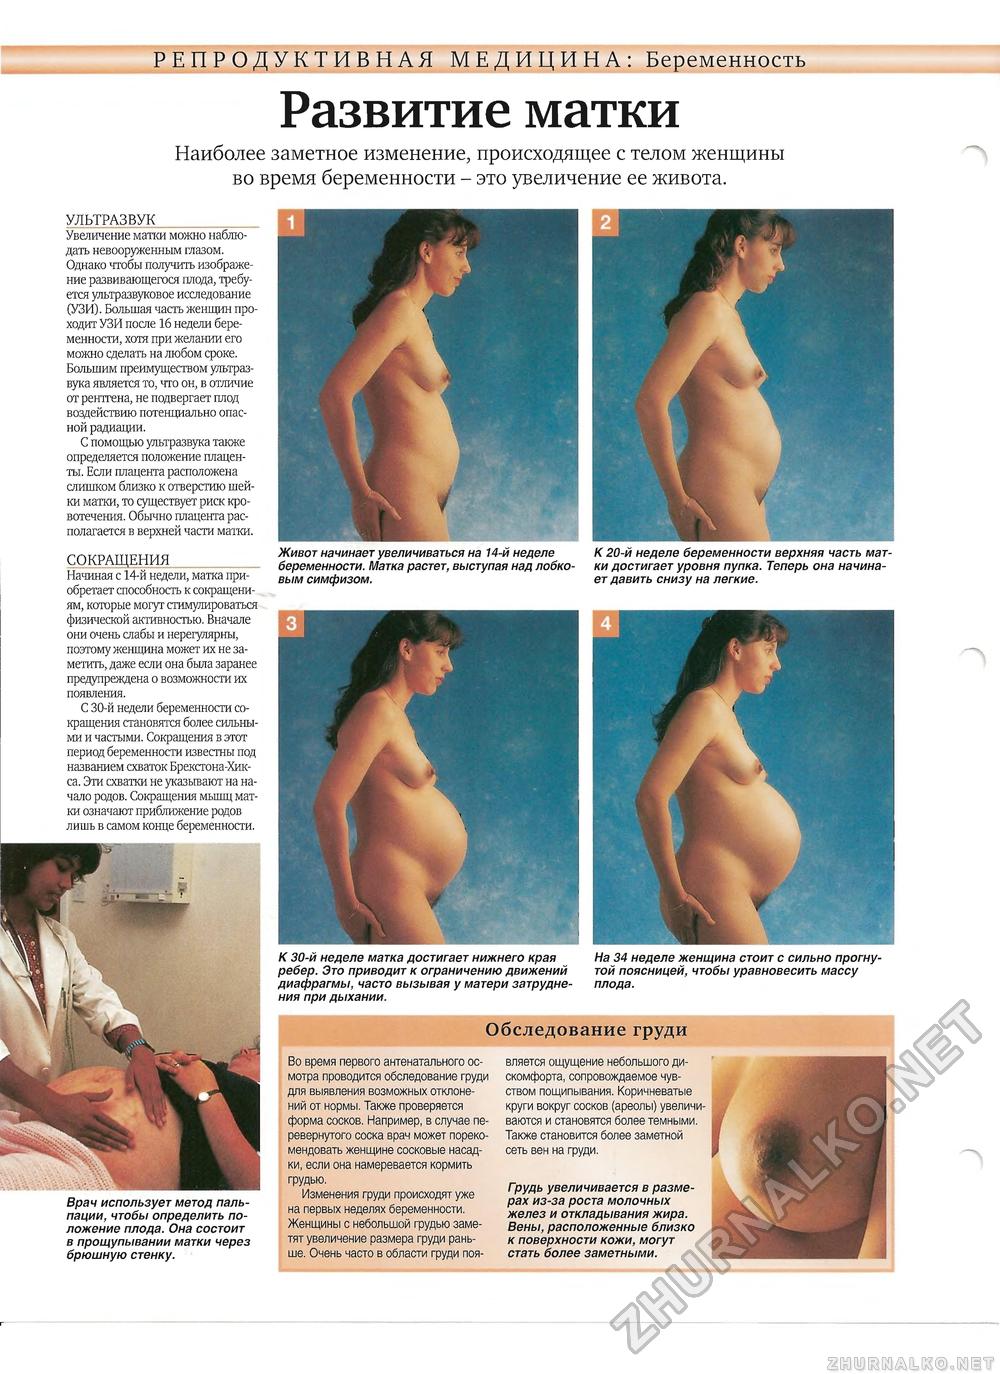 упругая грудь при беременности фото 57